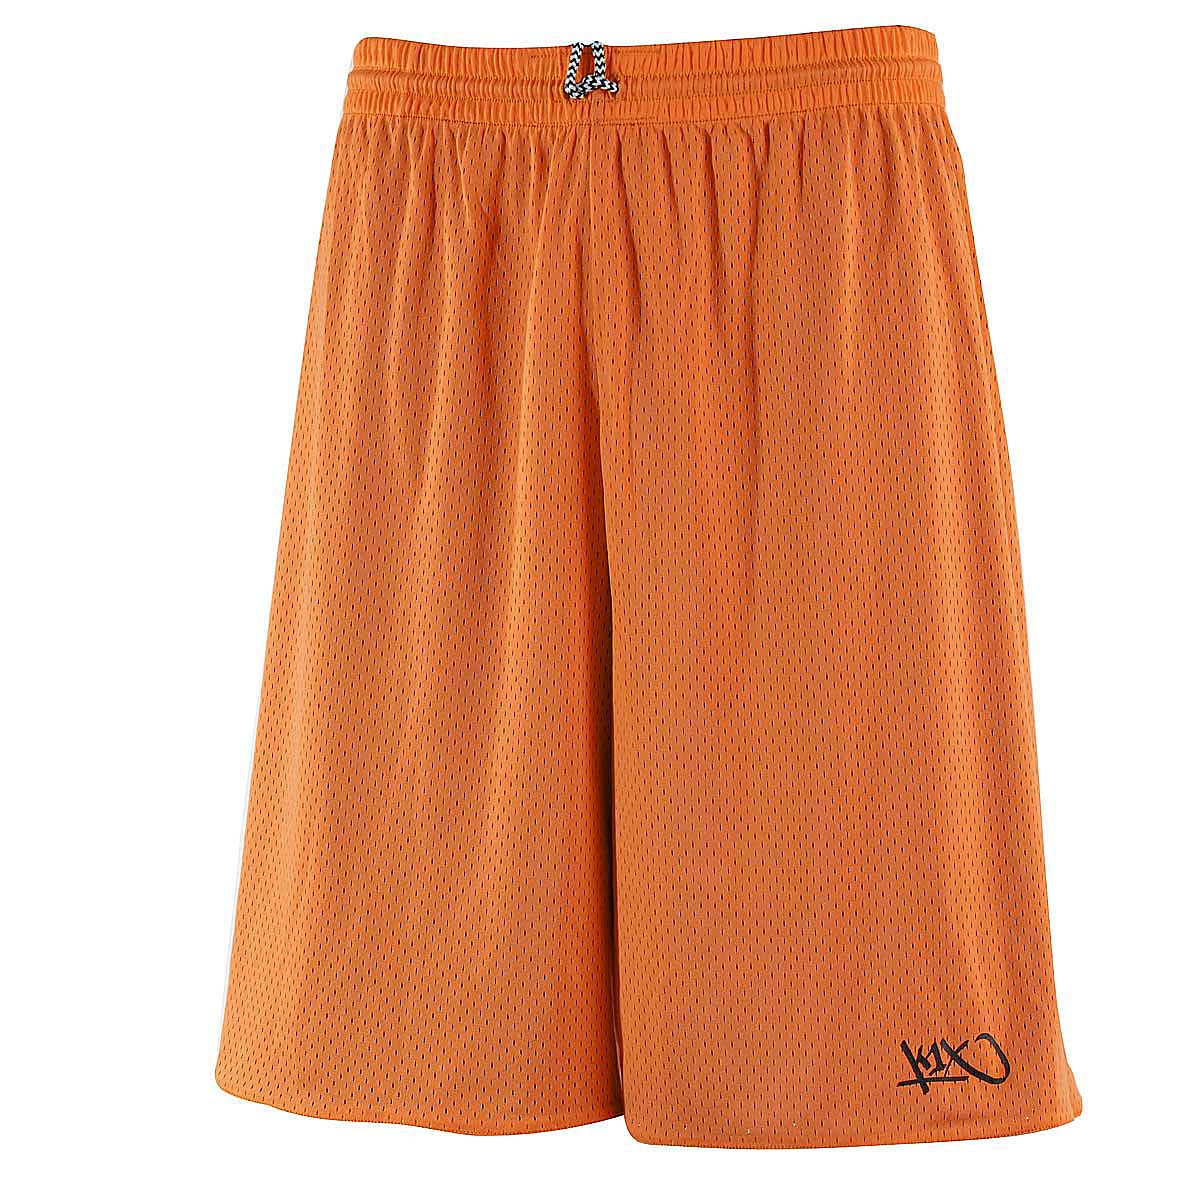 K1X K1X Hardwood Rev Practice Shorts Mk2, Black/Orange